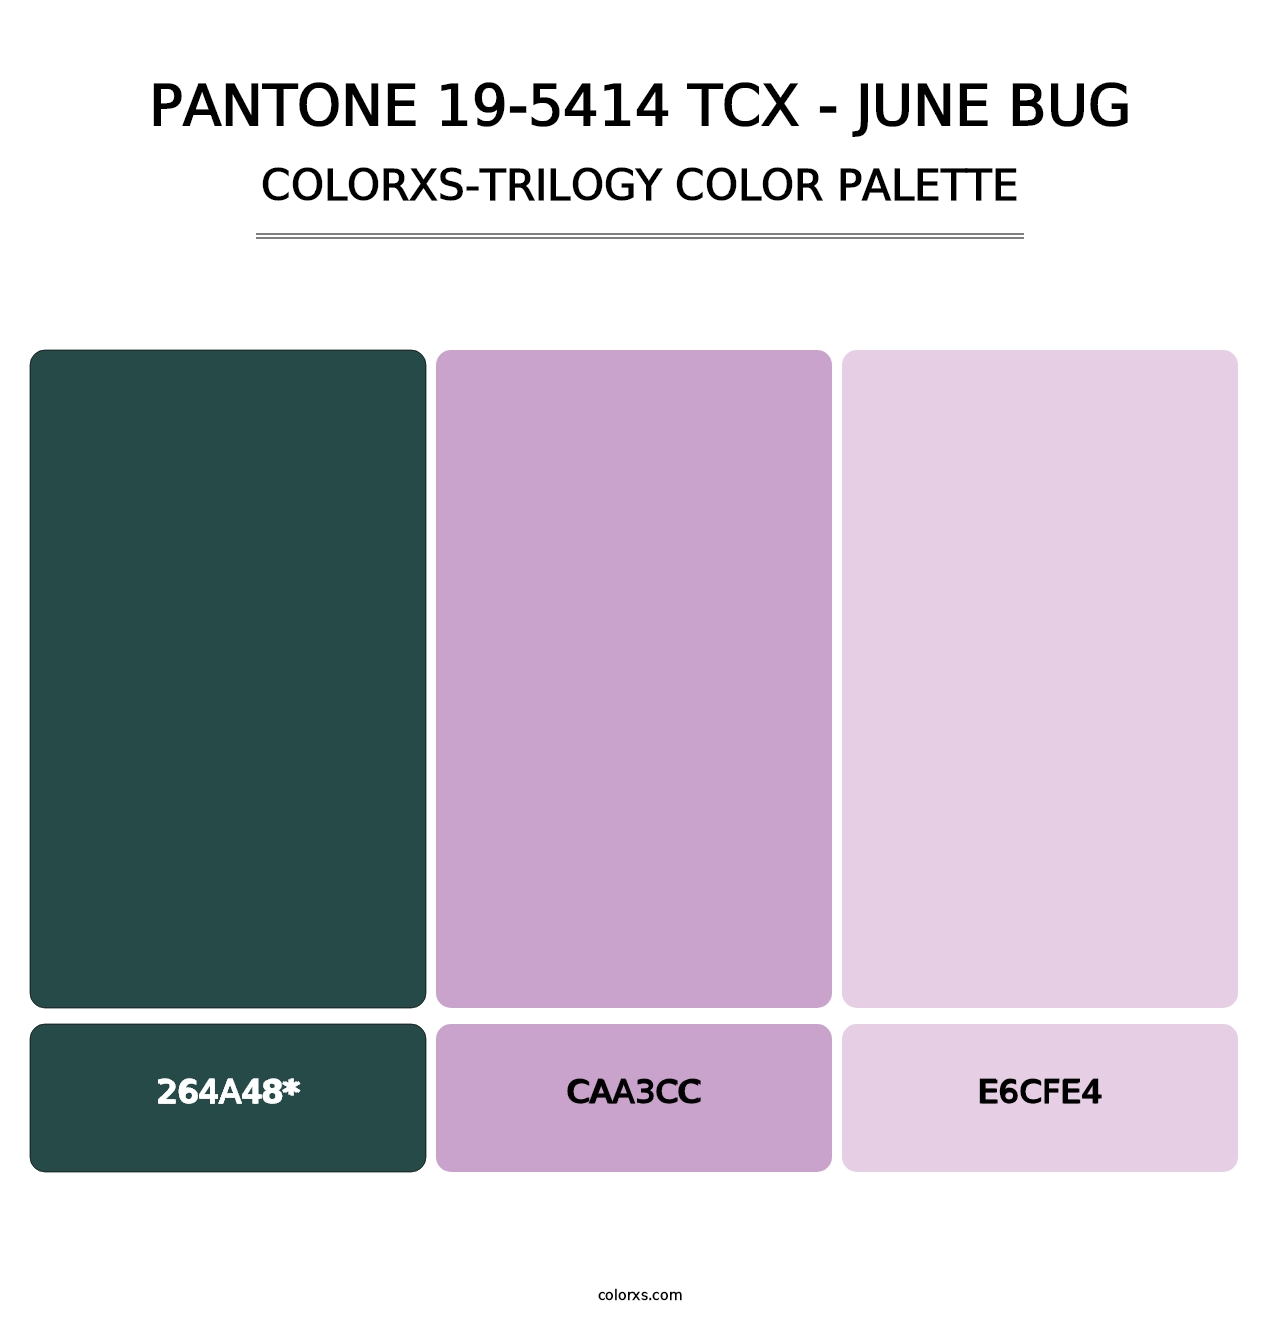 PANTONE 19-5414 TCX - June Bug - Colorxs Trilogy Palette